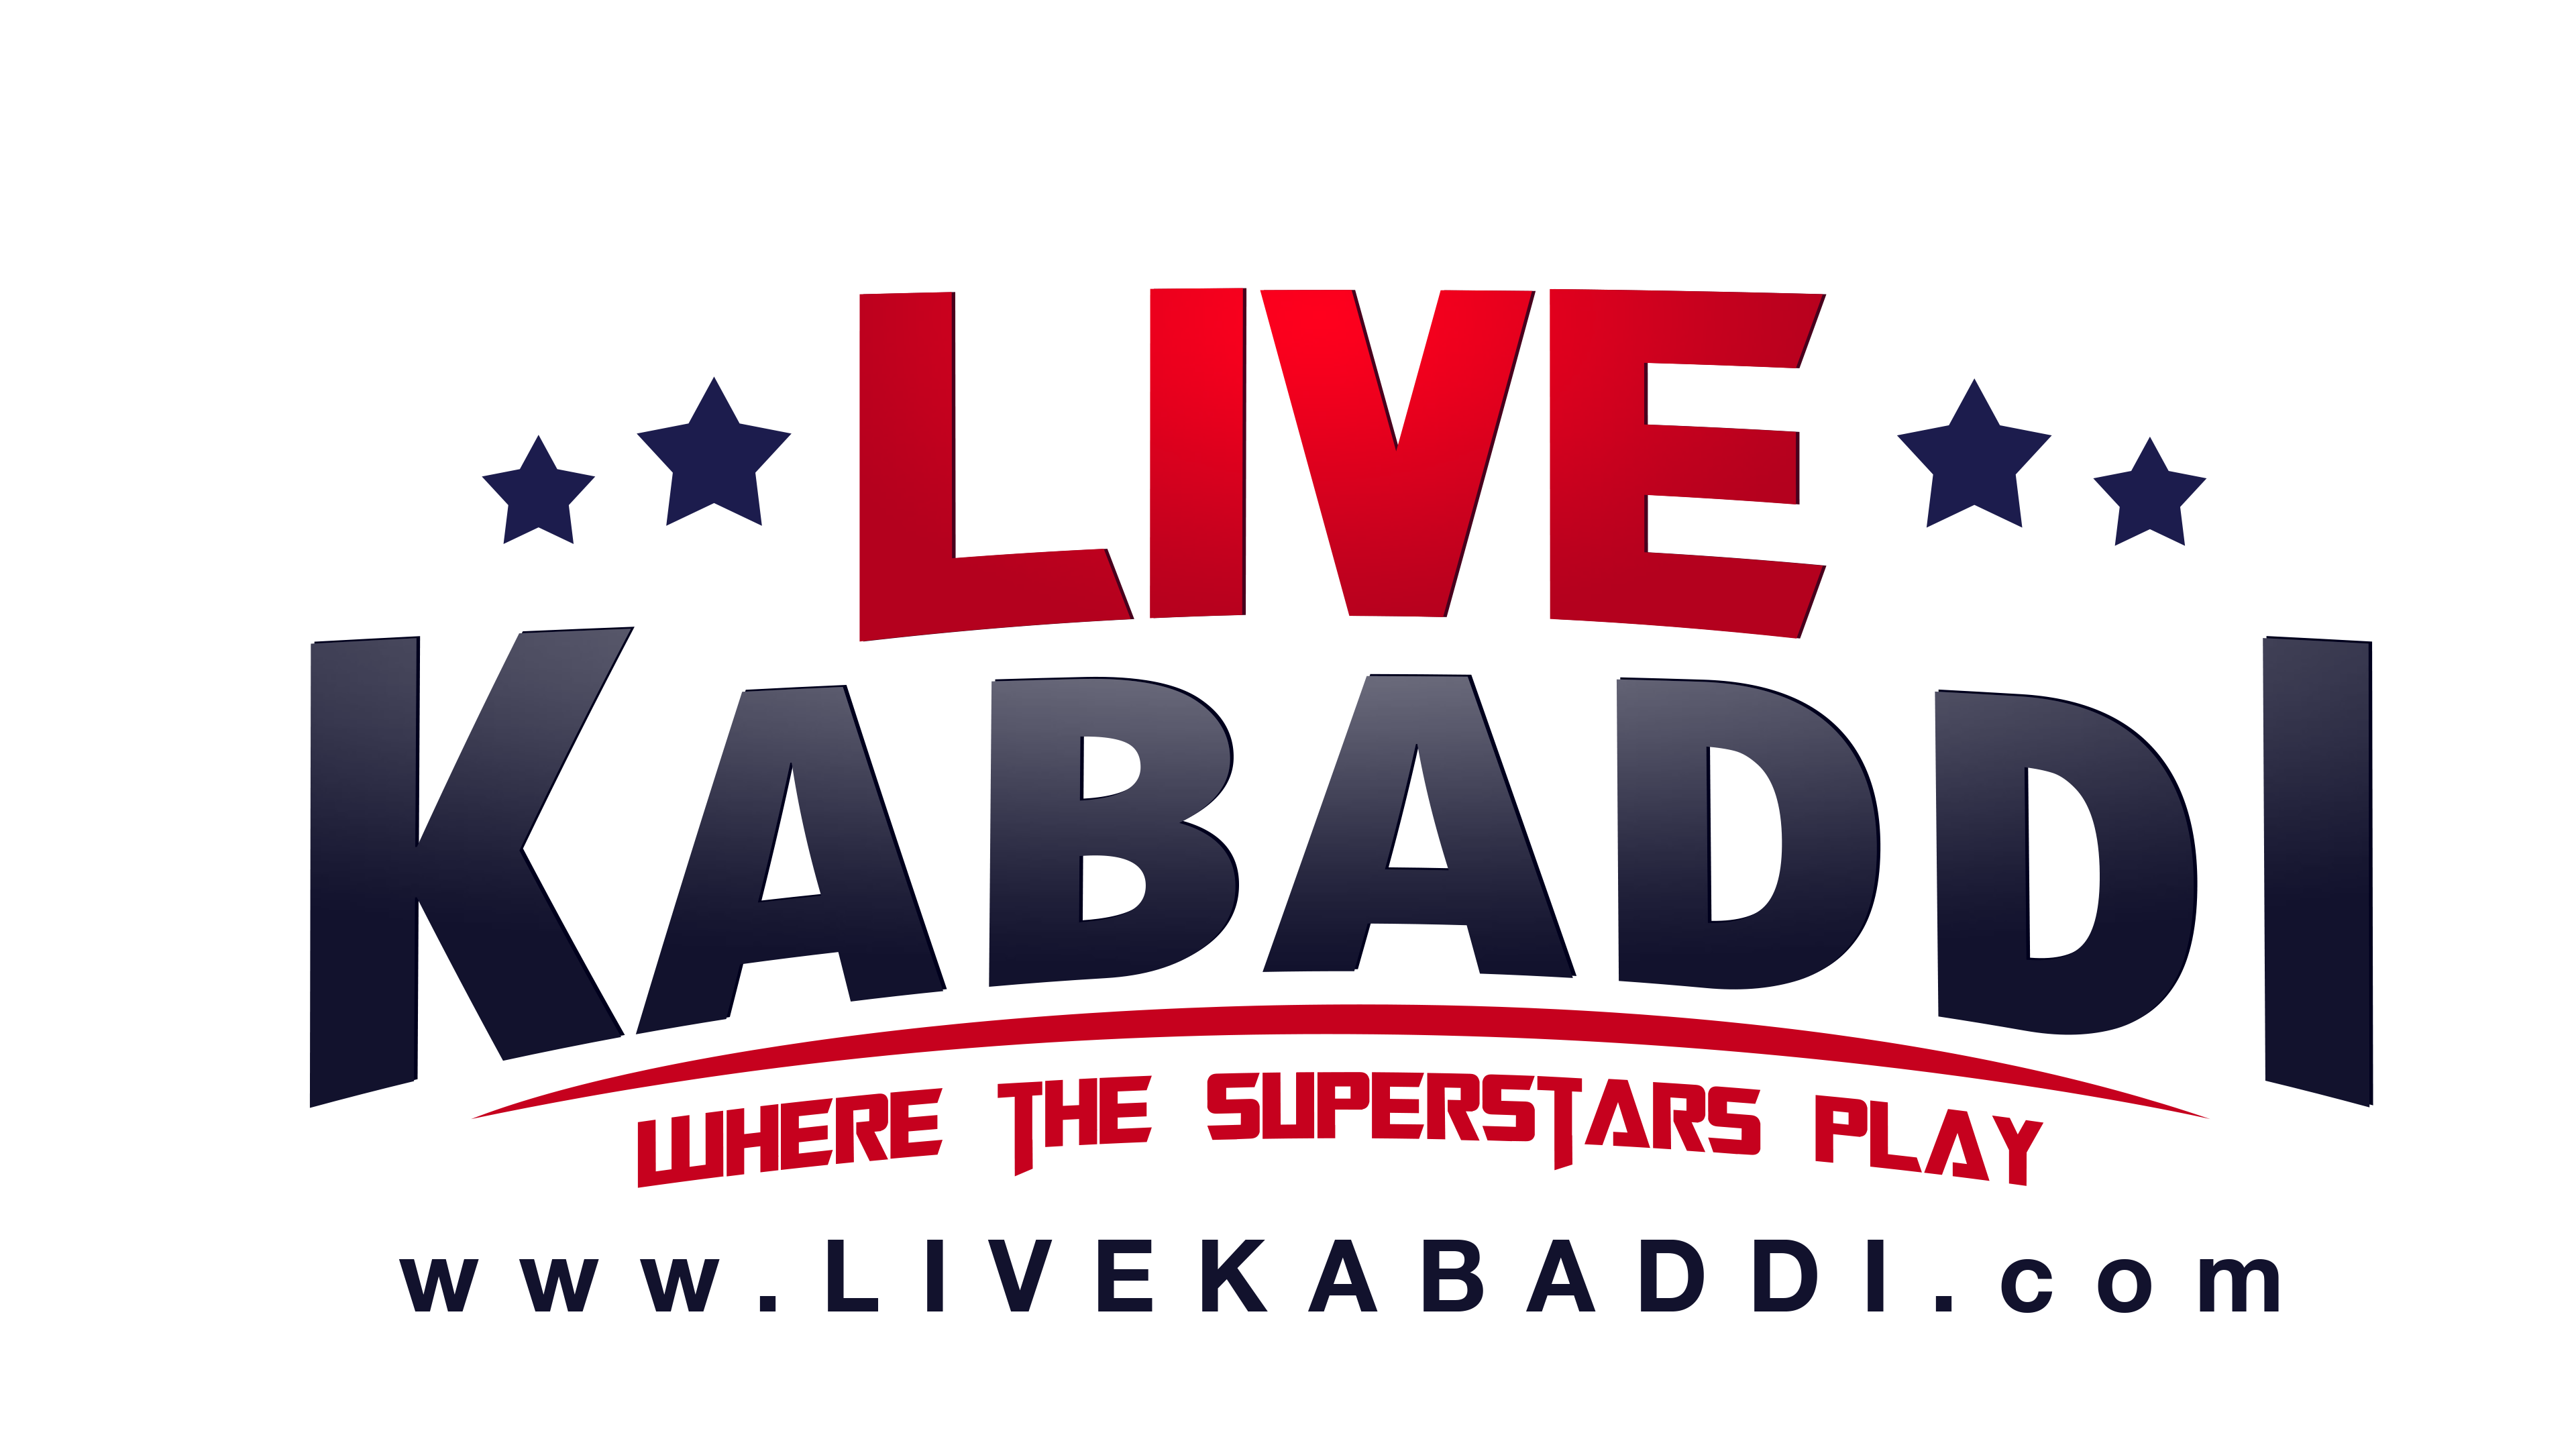 Live Kabaddi